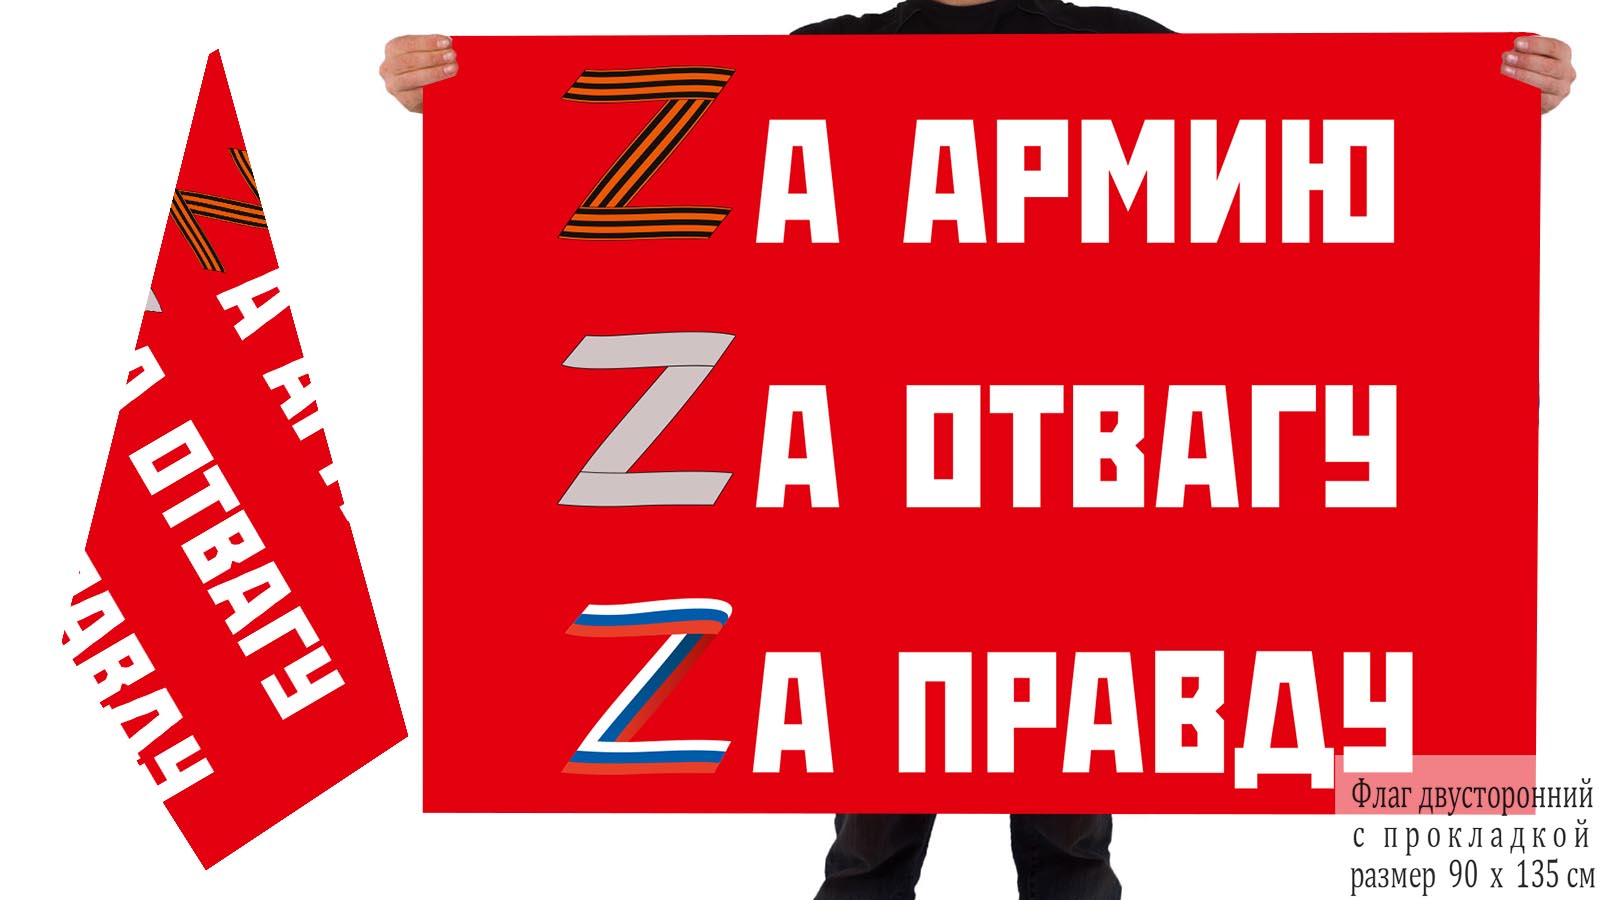 Двусторонний флаг "Zа армию, Zа отвагу, Zа правду"